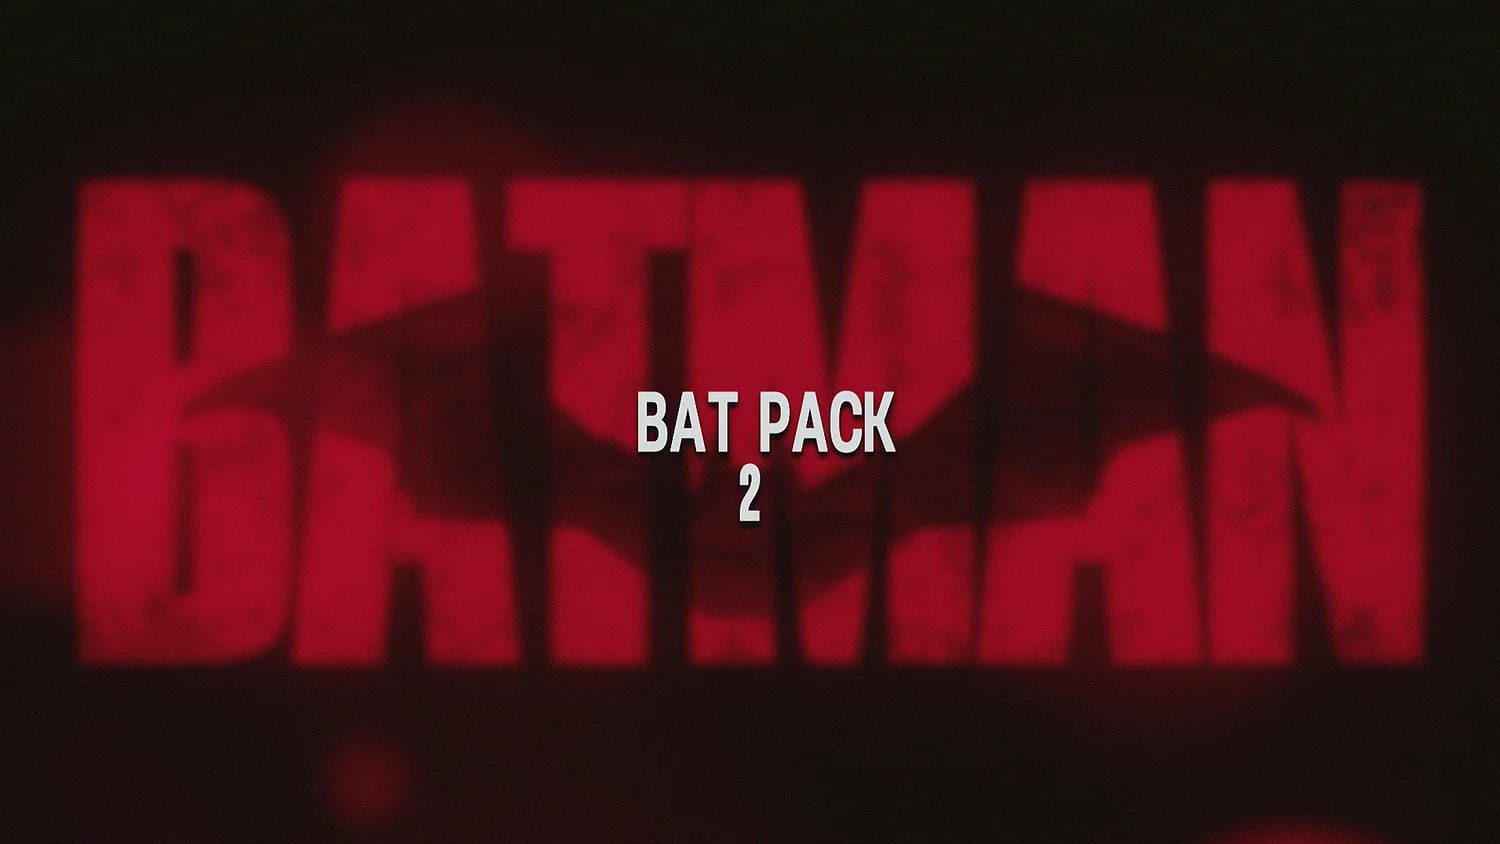 Payhip – BAT PACK 2